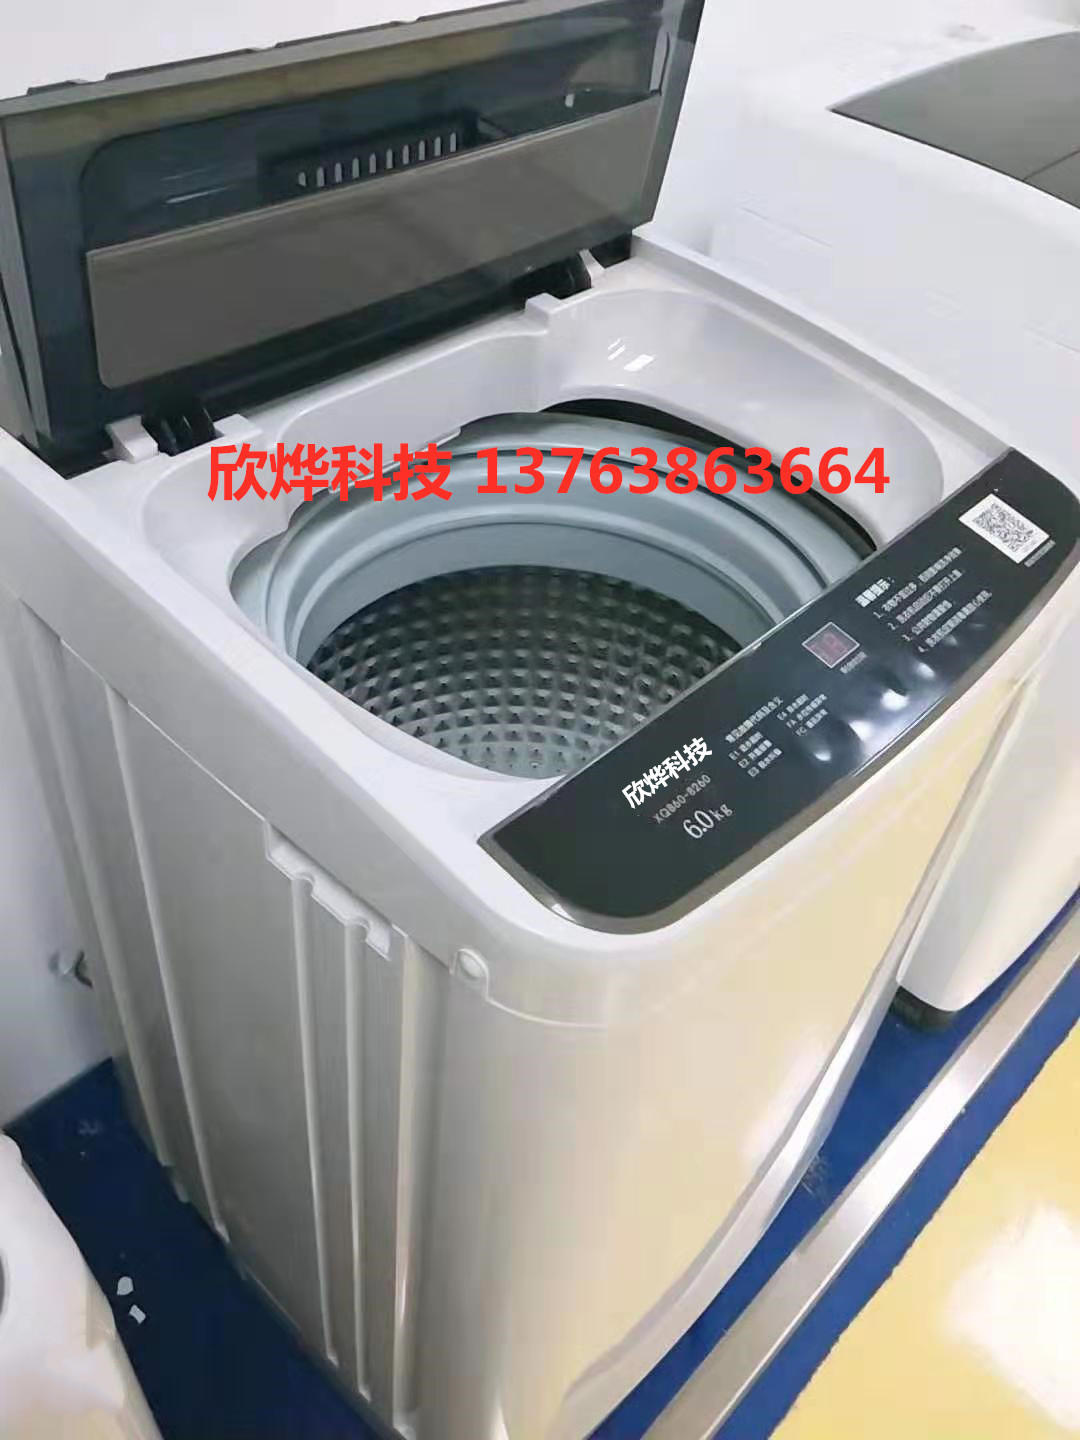 欣烨科技微信扫码洗衣机